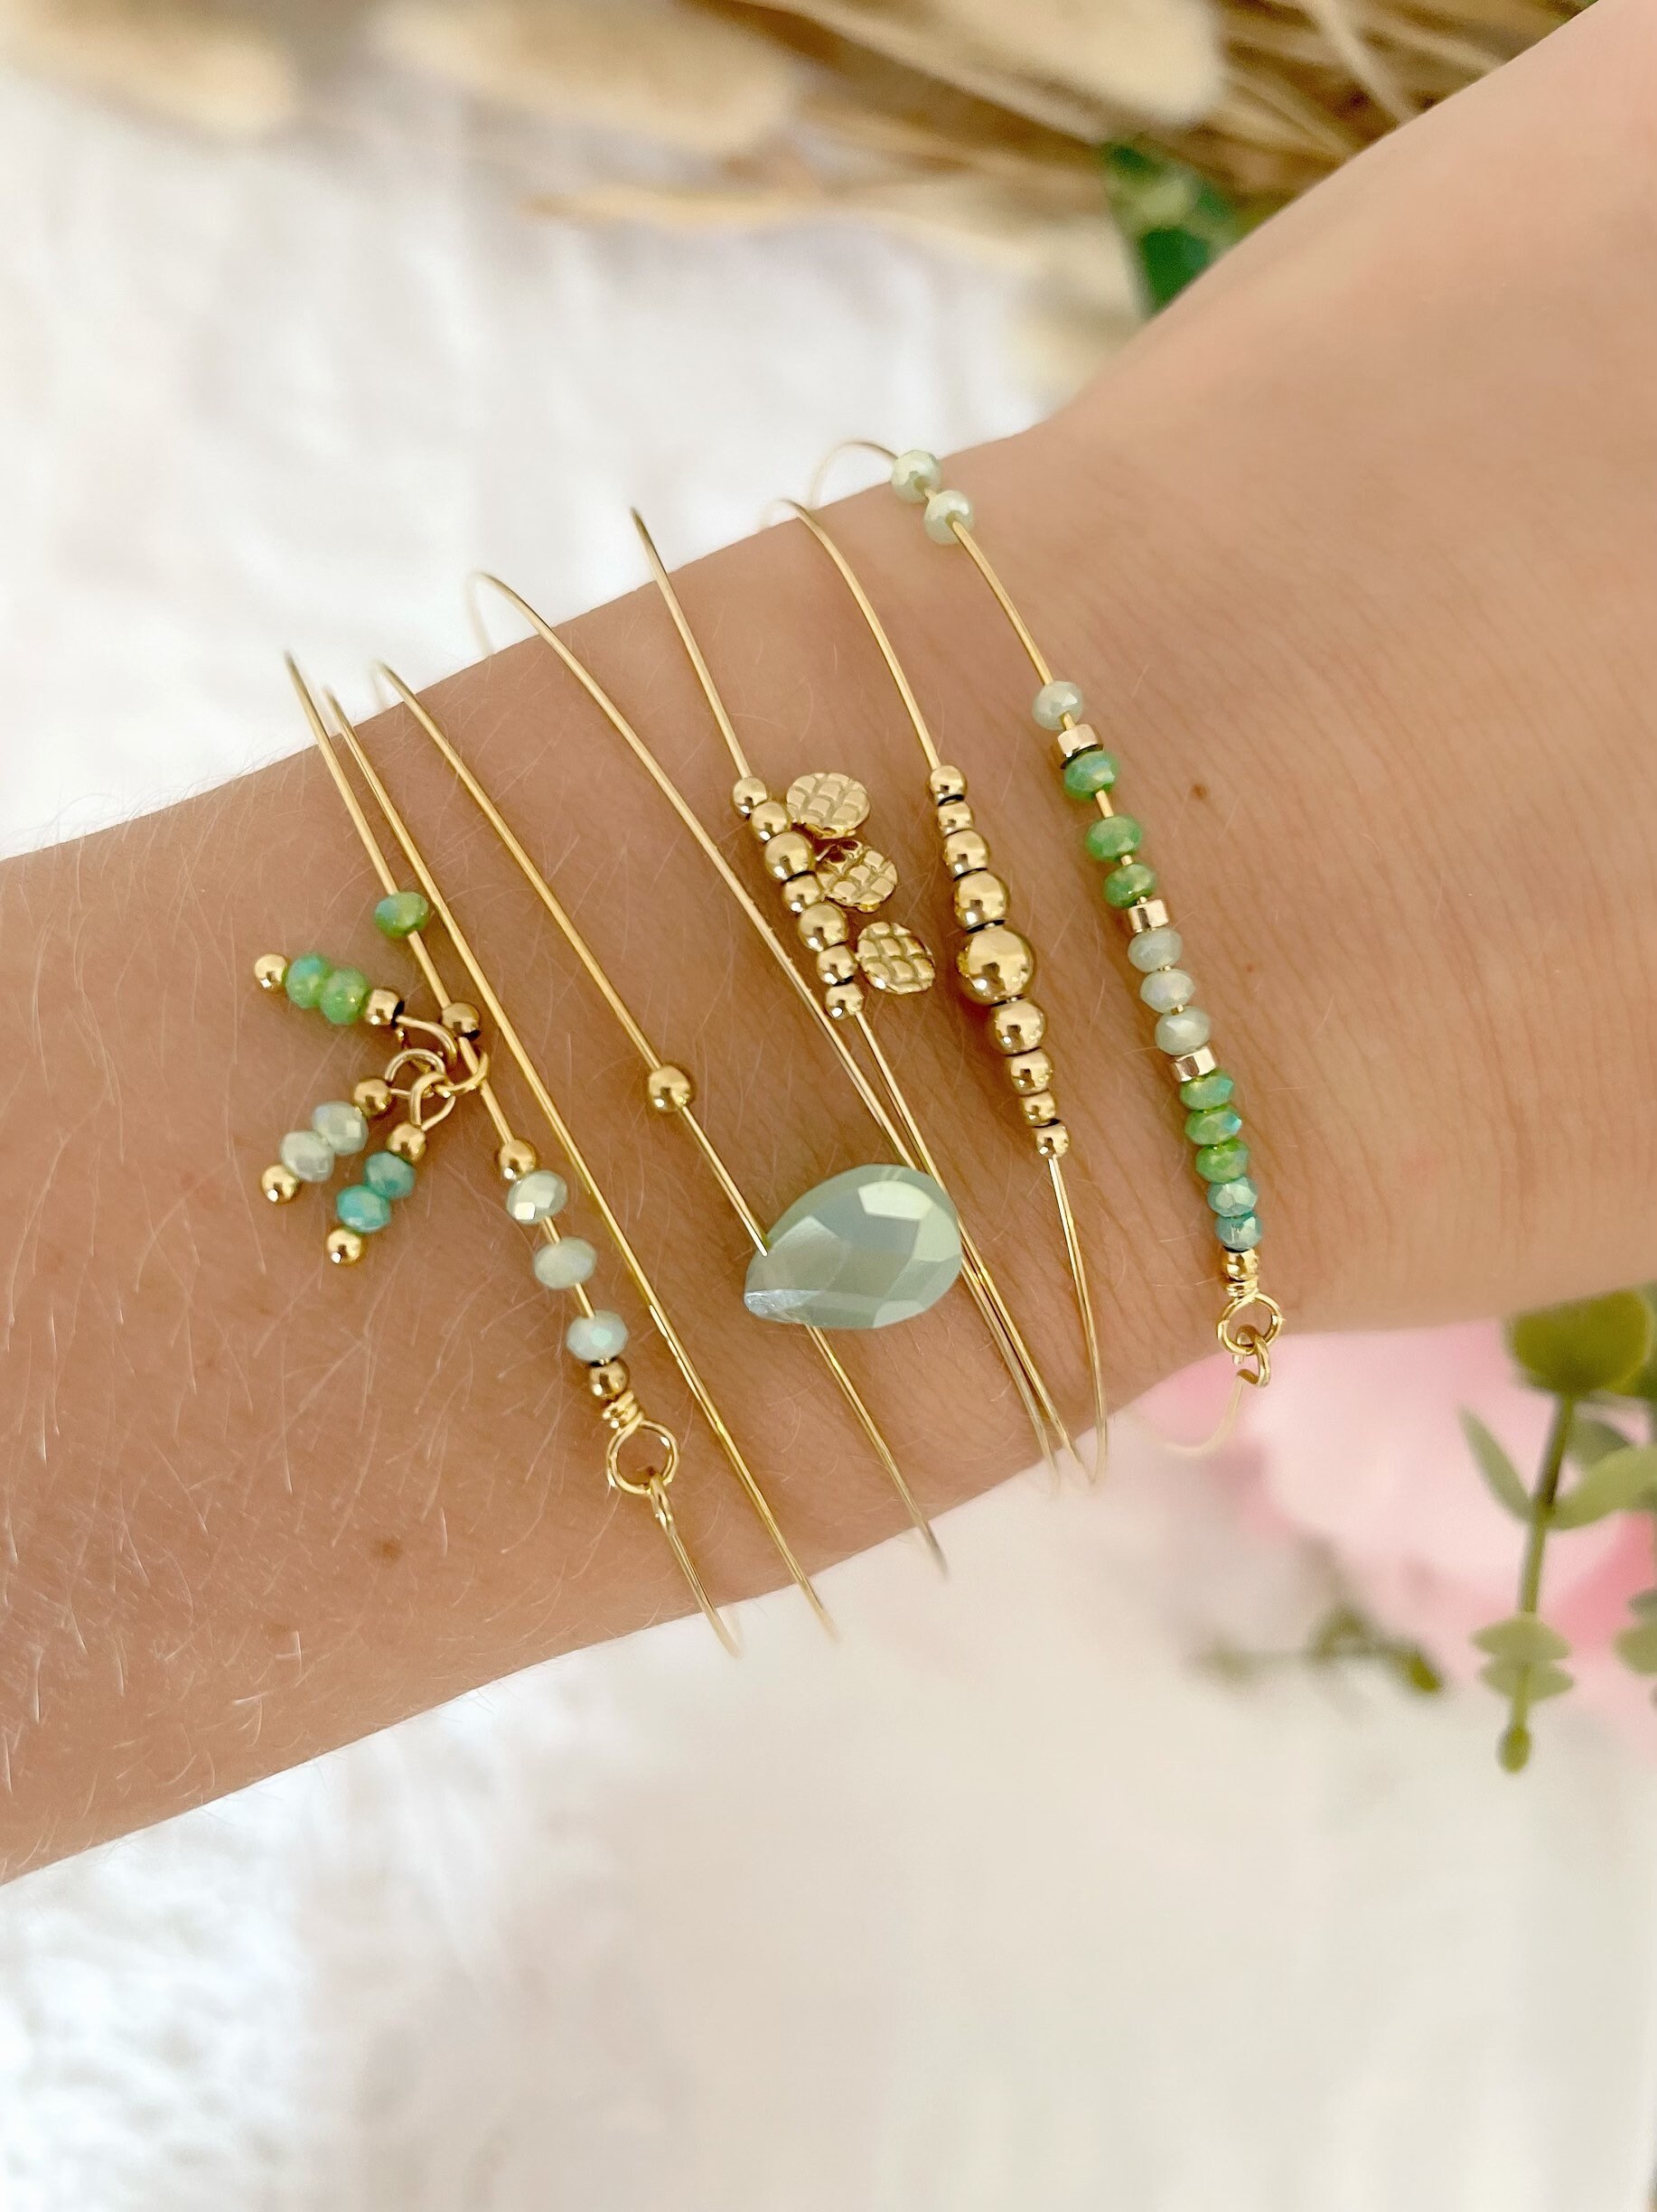 Ensemble de 7 bracelets femme en métal doré-bijoux fantaisie Plérin